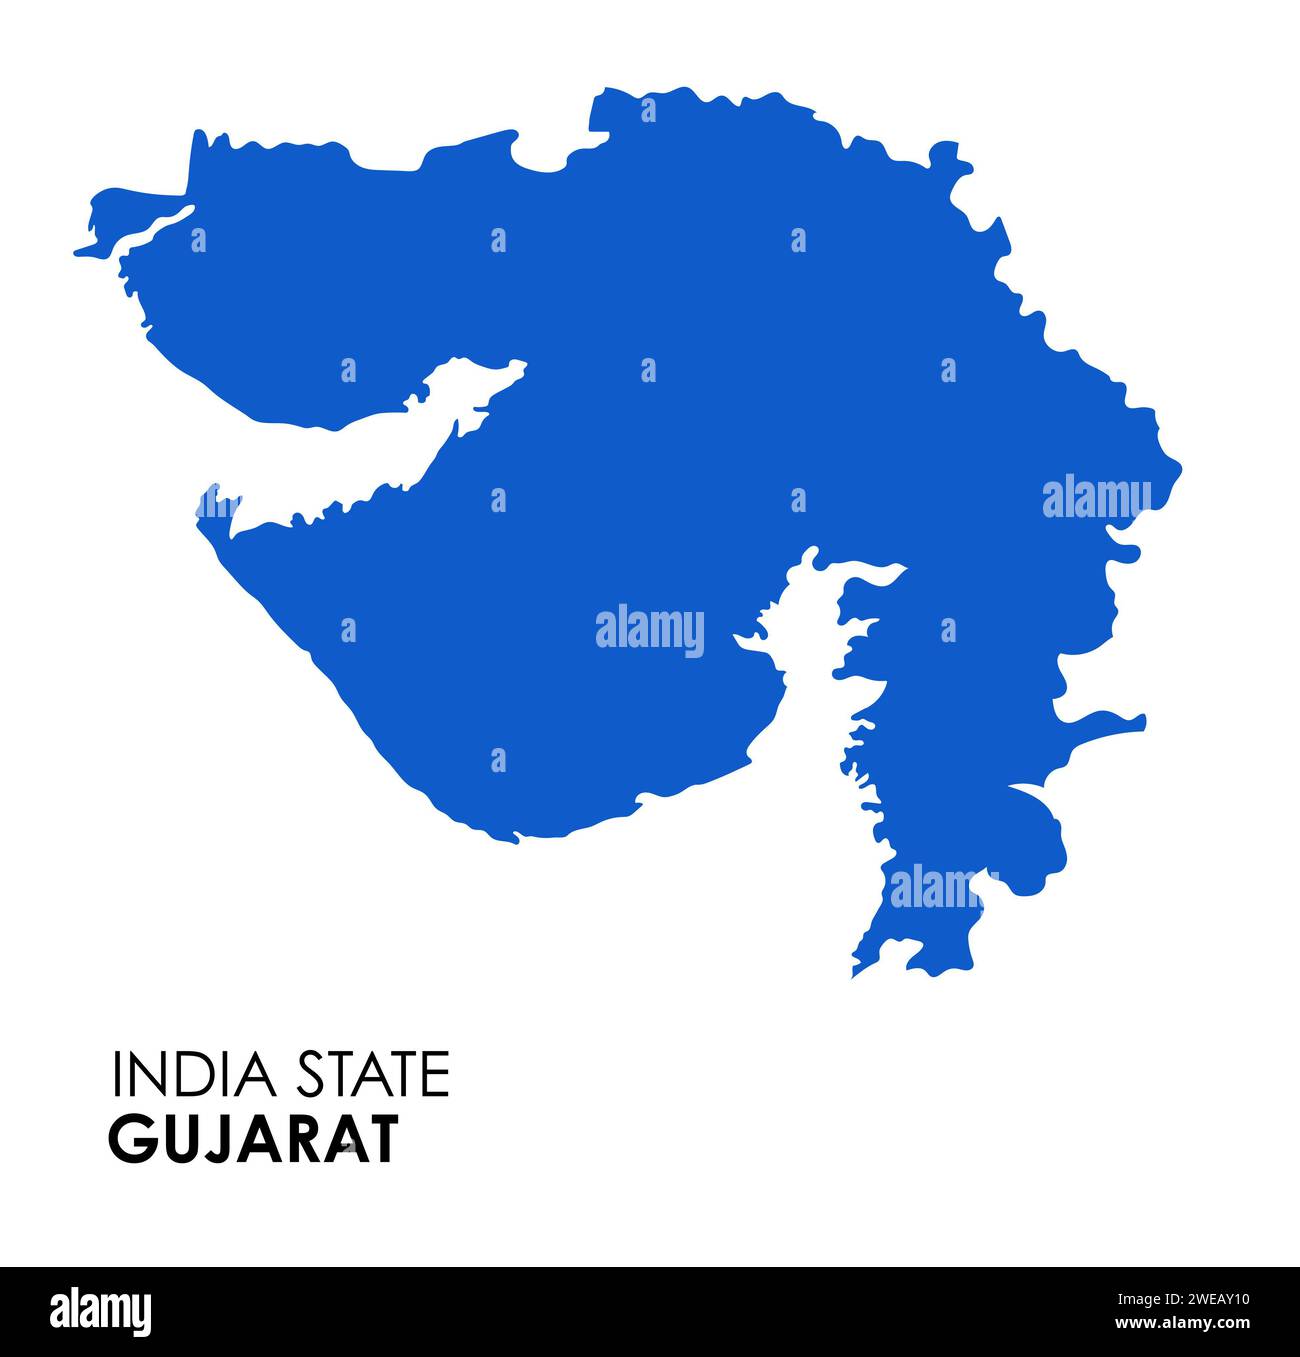 Carte du Gujarat de l'état indien. Illustration vectorielle de carte Gujarat. Carte Gujarat sur fond blanc. Banque D'Images